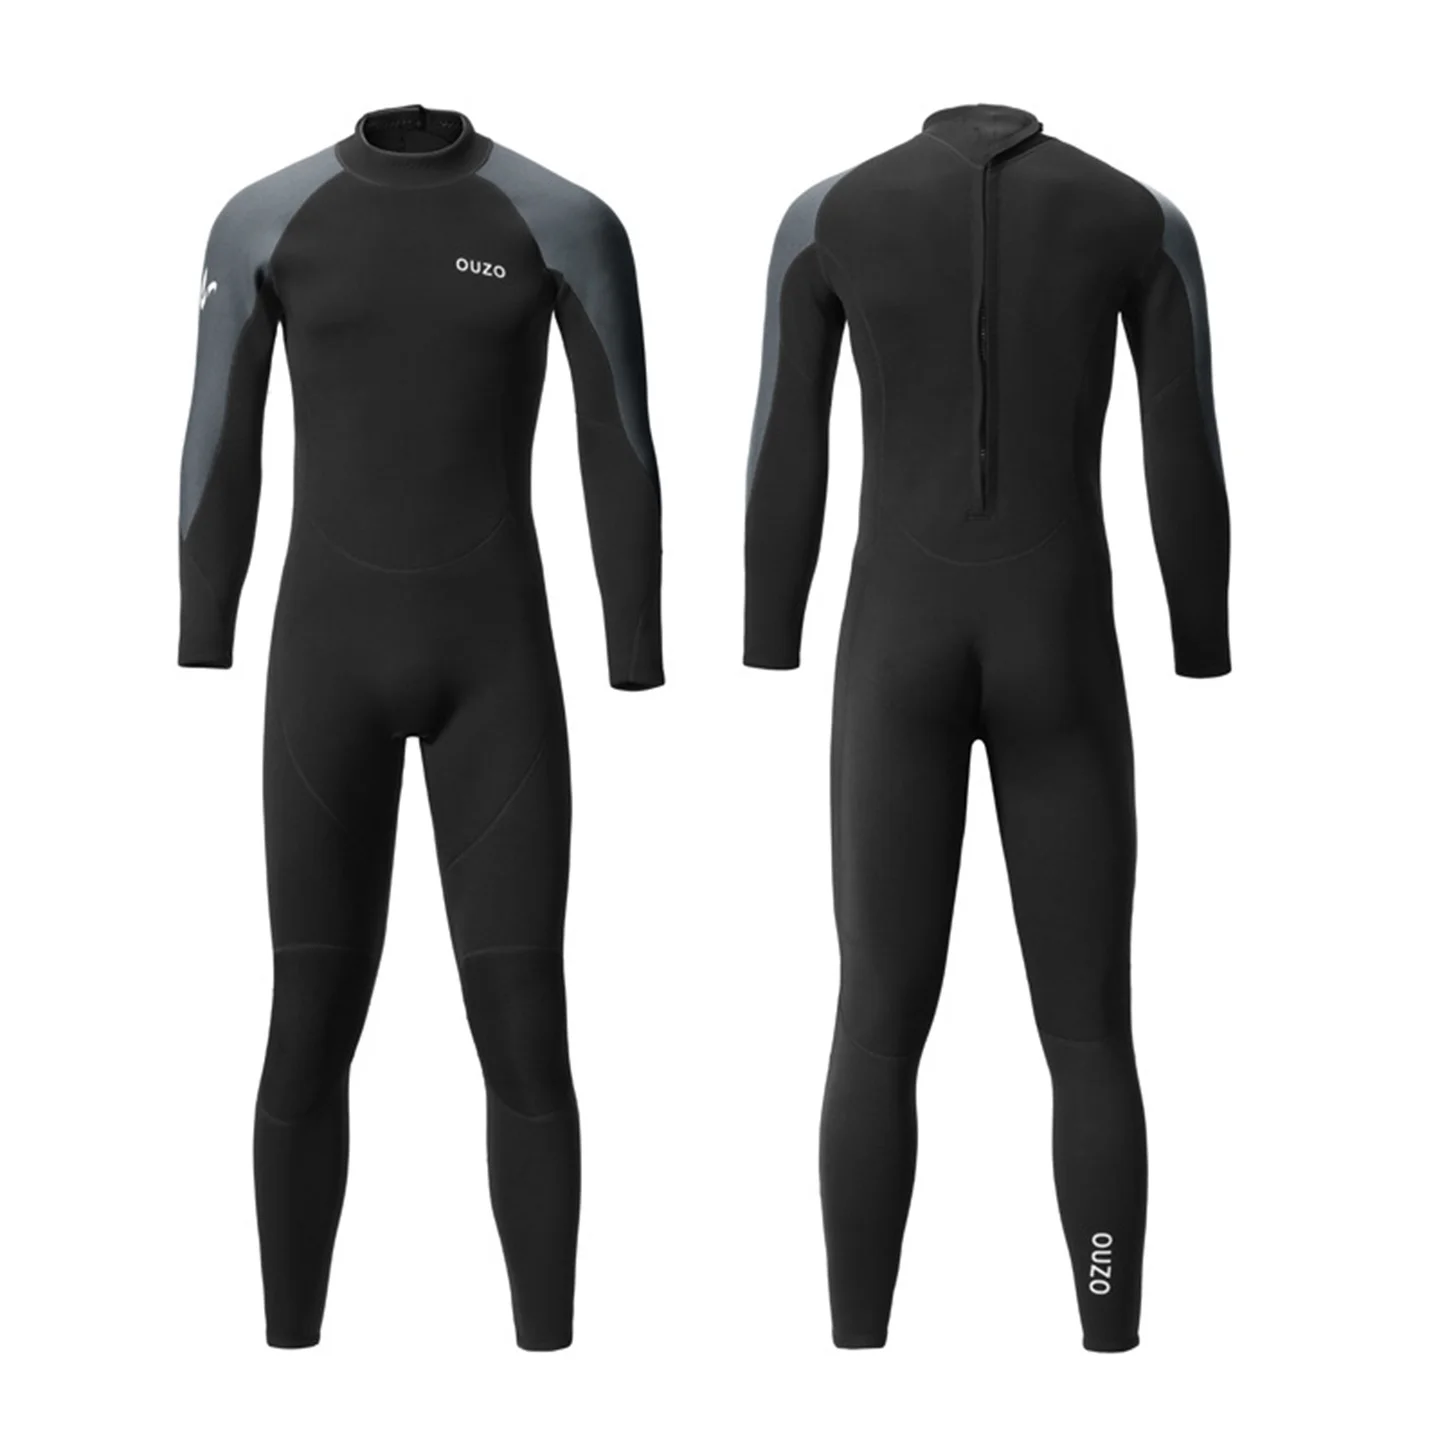 inverno-15mm-neoprene-wetsuit-homens-terno-de-mergulho-completo-do-corpo-para-mergulho-caca-submarina-mergulho-surf-swimsuit-termico-deepwater